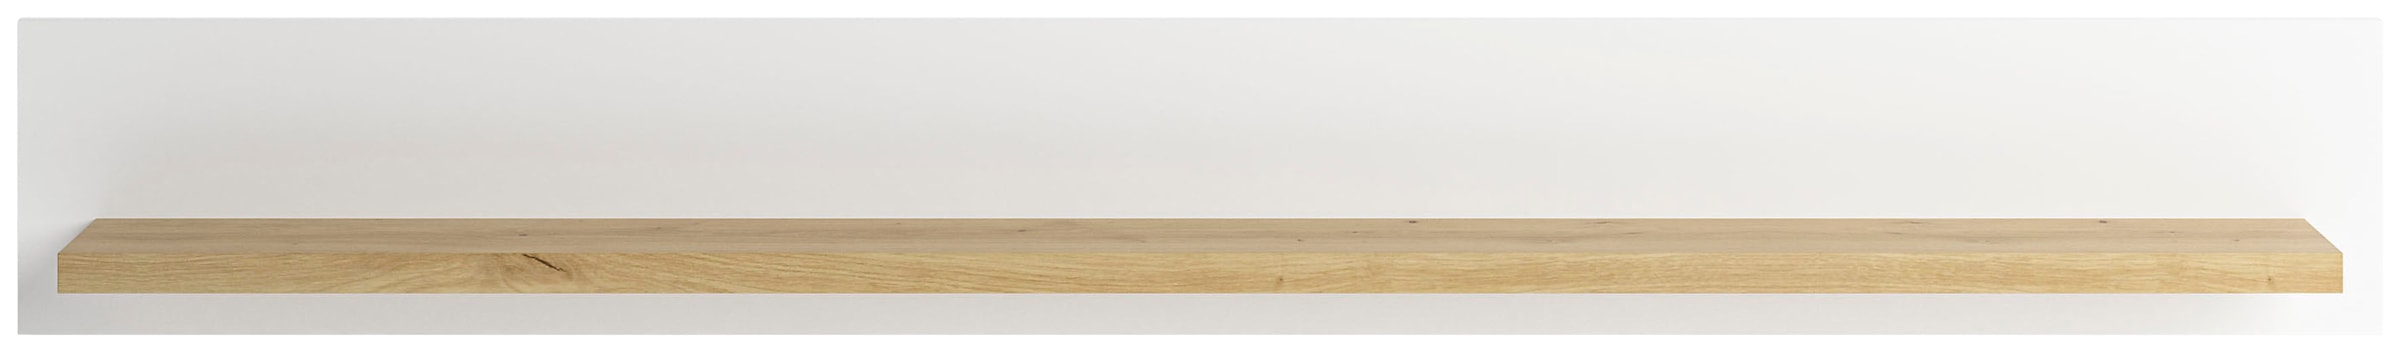 set one by Musterring Wandboard "Lancaster", Breite 150 oder 180 cm, Ablageboden in Eiche